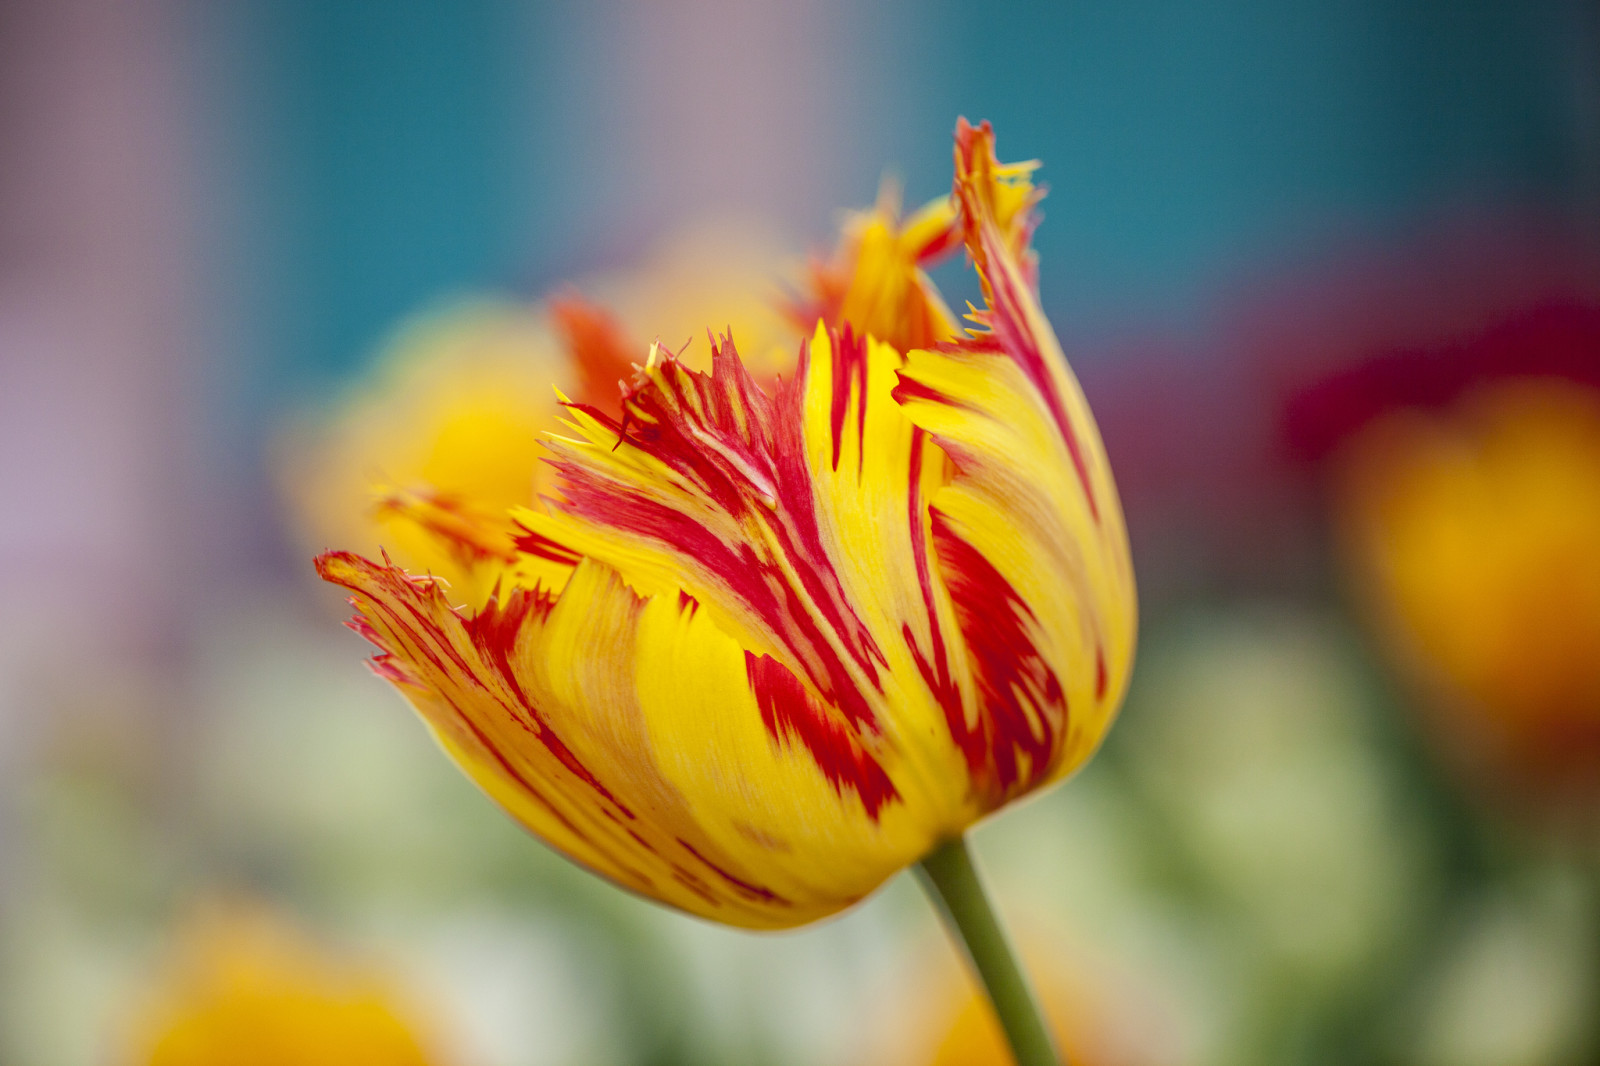 mùa xuân, bông hoa, Terry, vàng đỏ, Hoa tulip